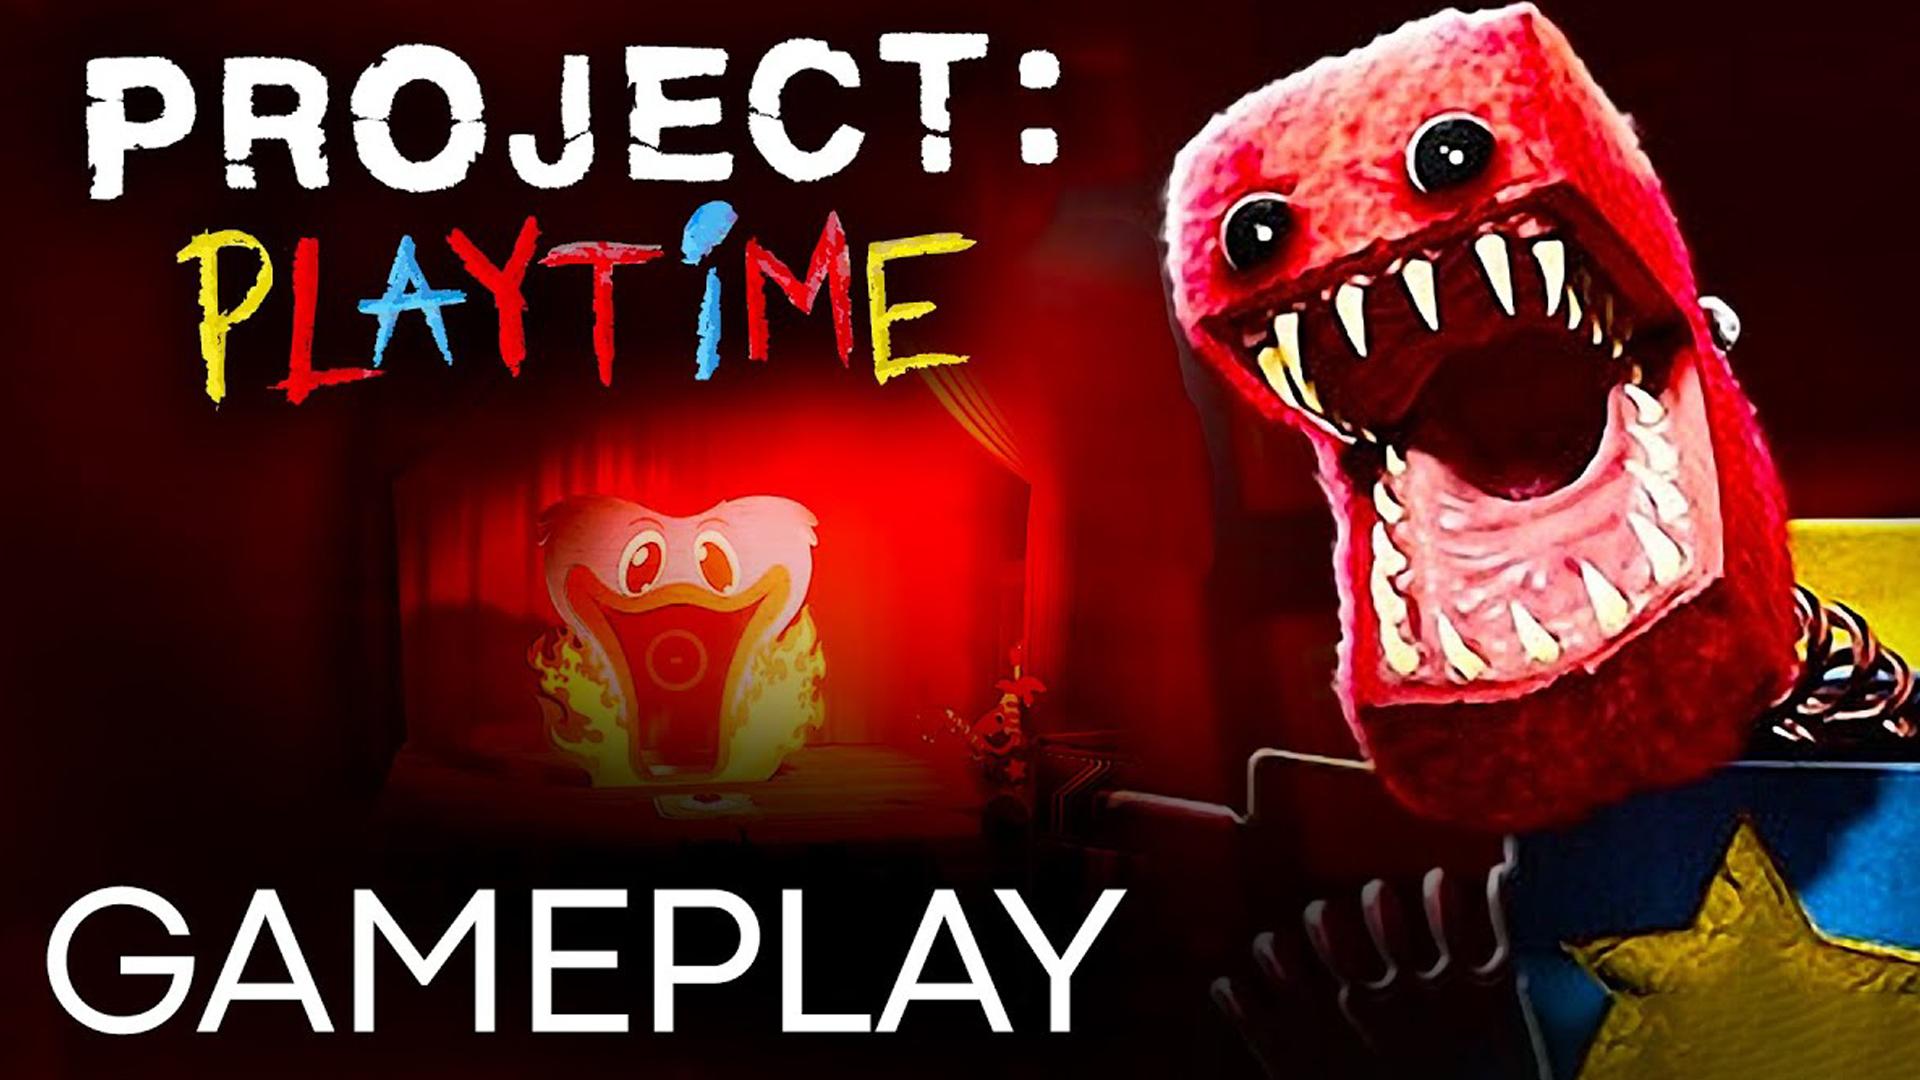 Есть 4 часть poppy playtime. Проджект Плейтайм. Poppy Playtime Project. Poppy Playtime Project Playtime. Project Poppy Play time.